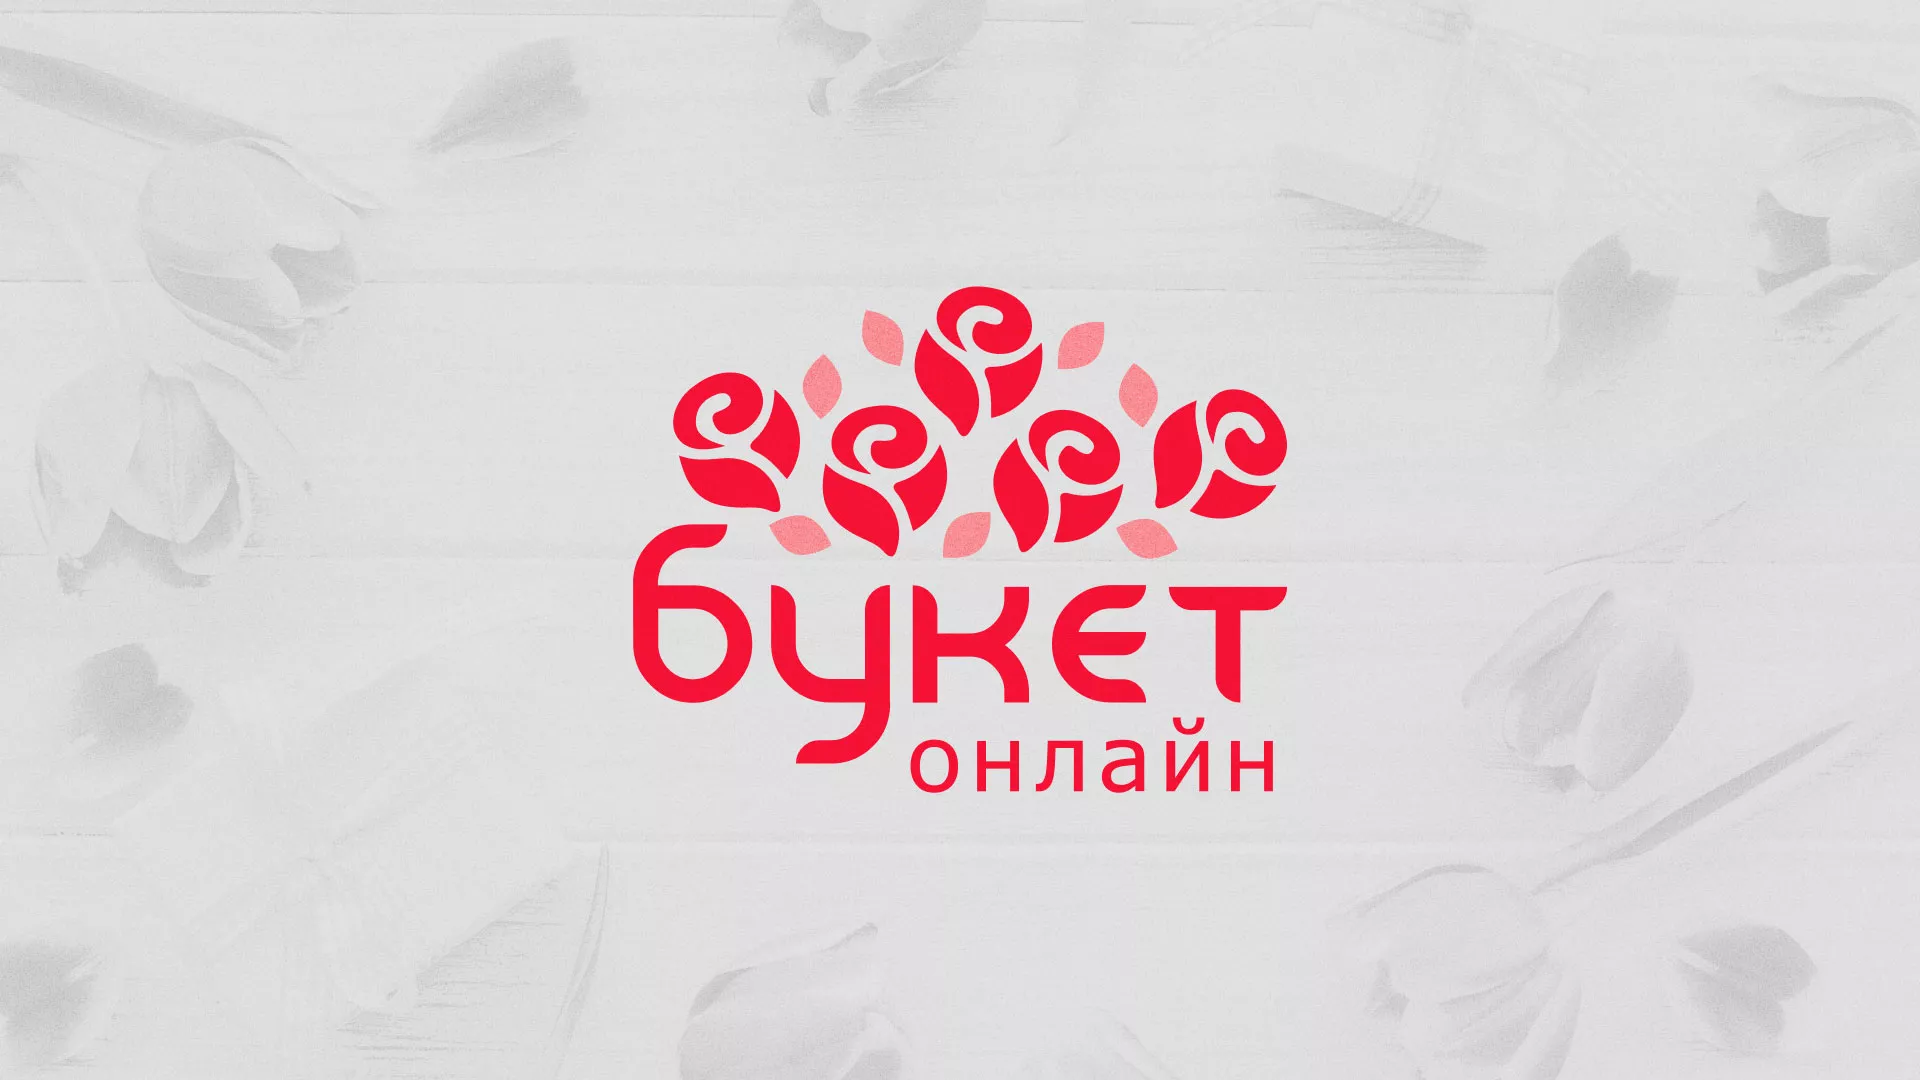 Создание интернет-магазина «Букет-онлайн» по цветам в Октябрьске